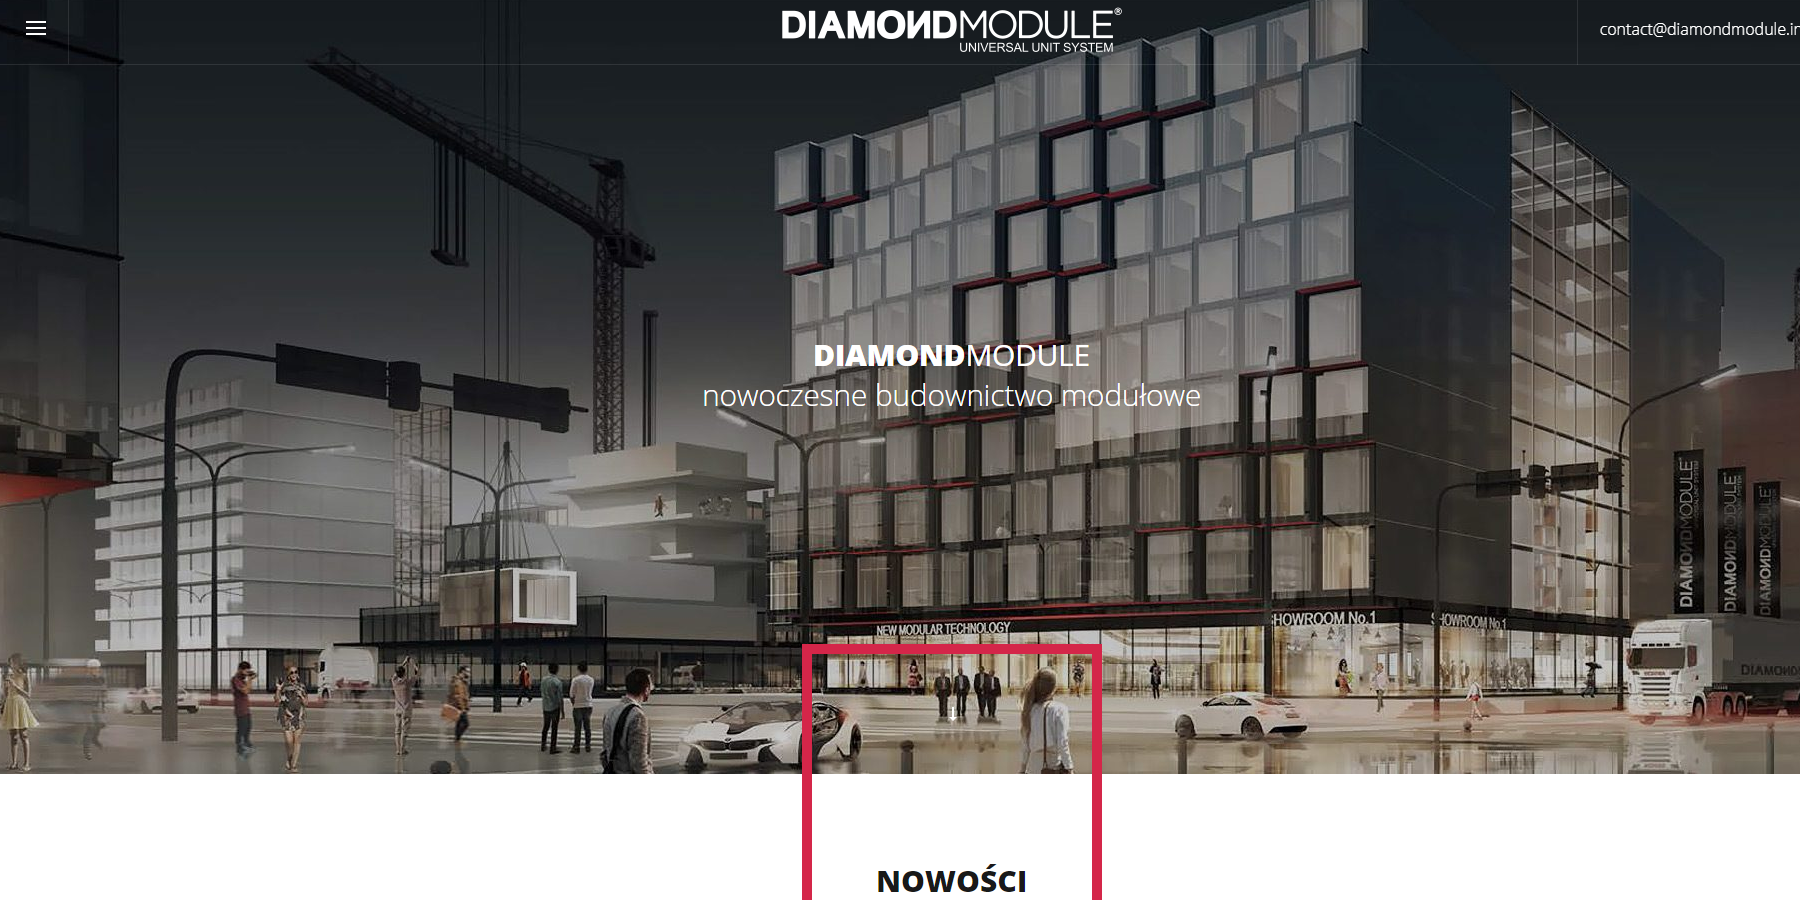 Polska wersja strony diamondmodule.info